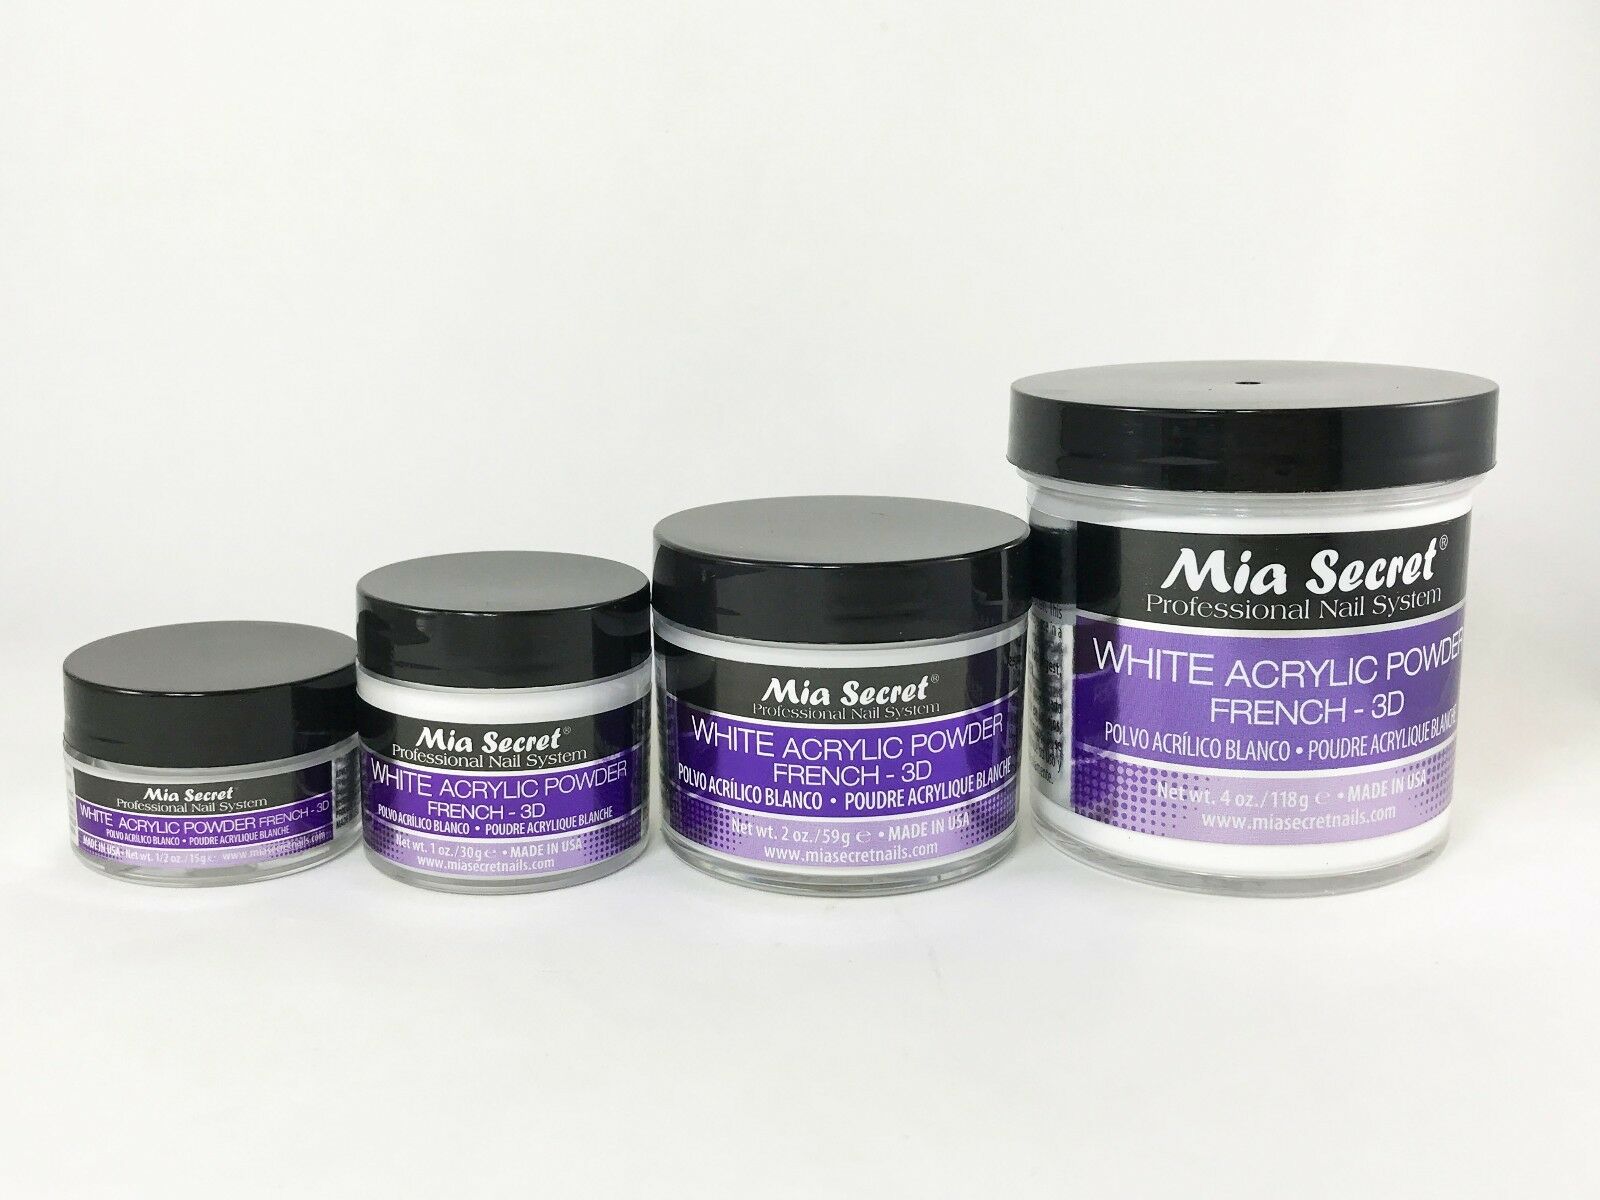 Mia Secret White Acrylic Powder 0.5 Oz / 1 Oz / 2 Oz / 4 Oz - Choose Your Size